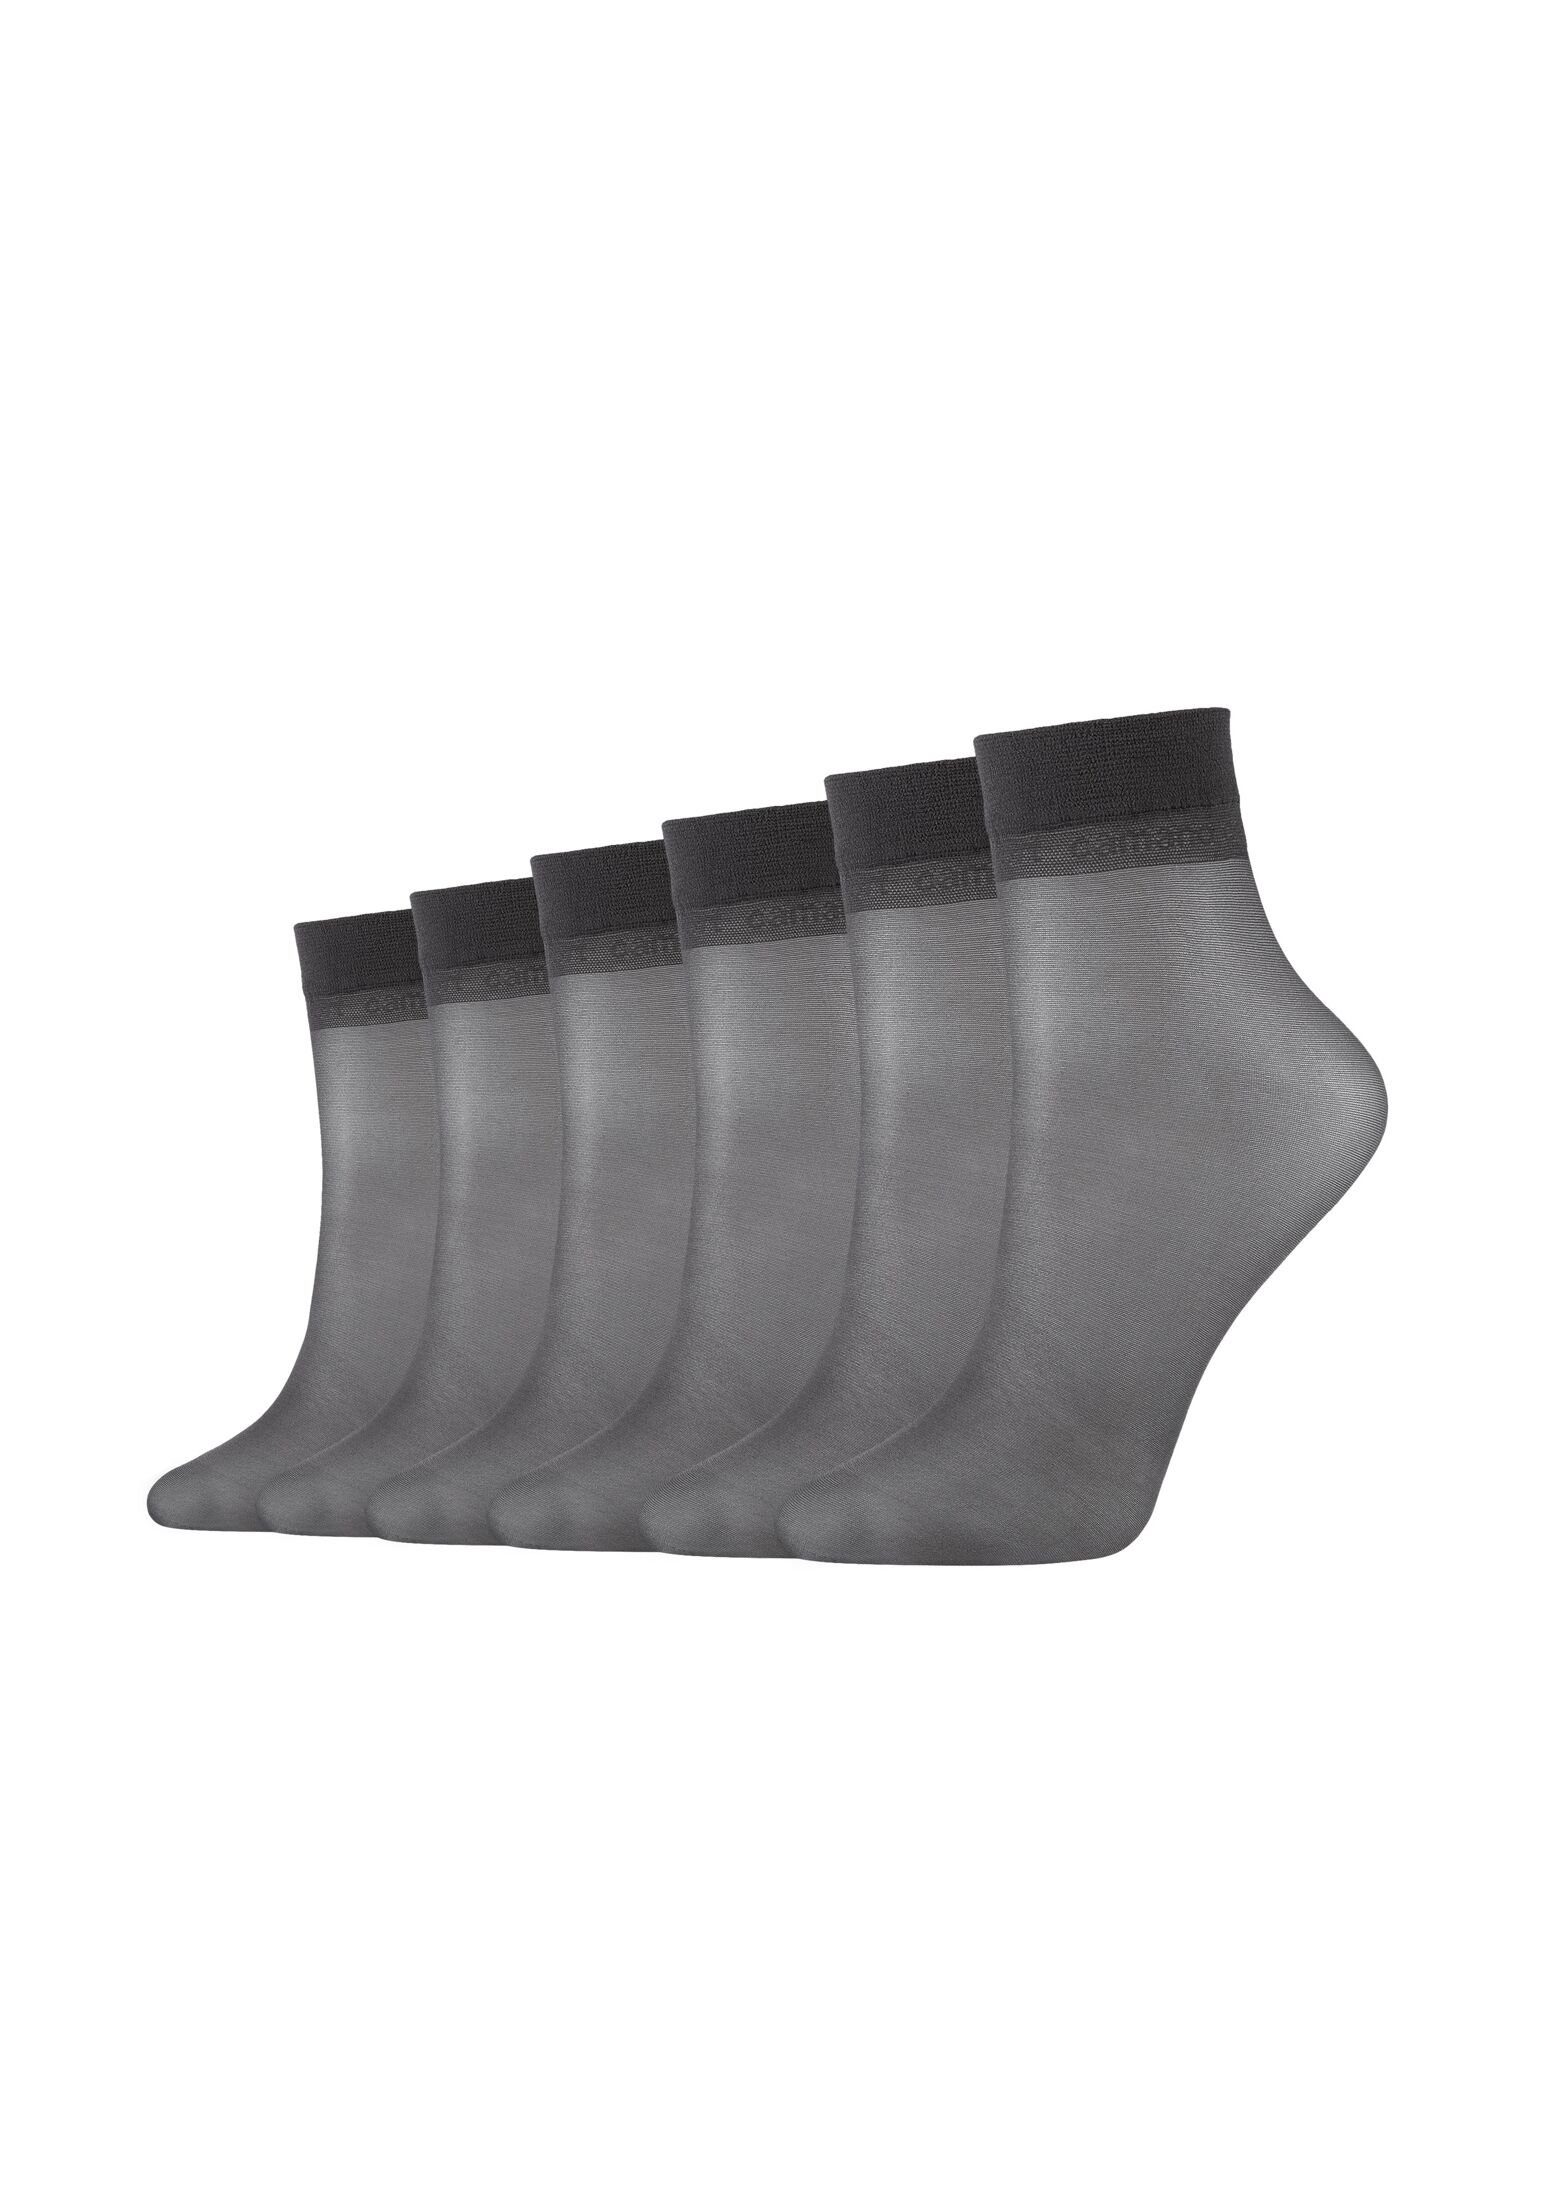 Camano Socken Socken anthracite 6er Pack